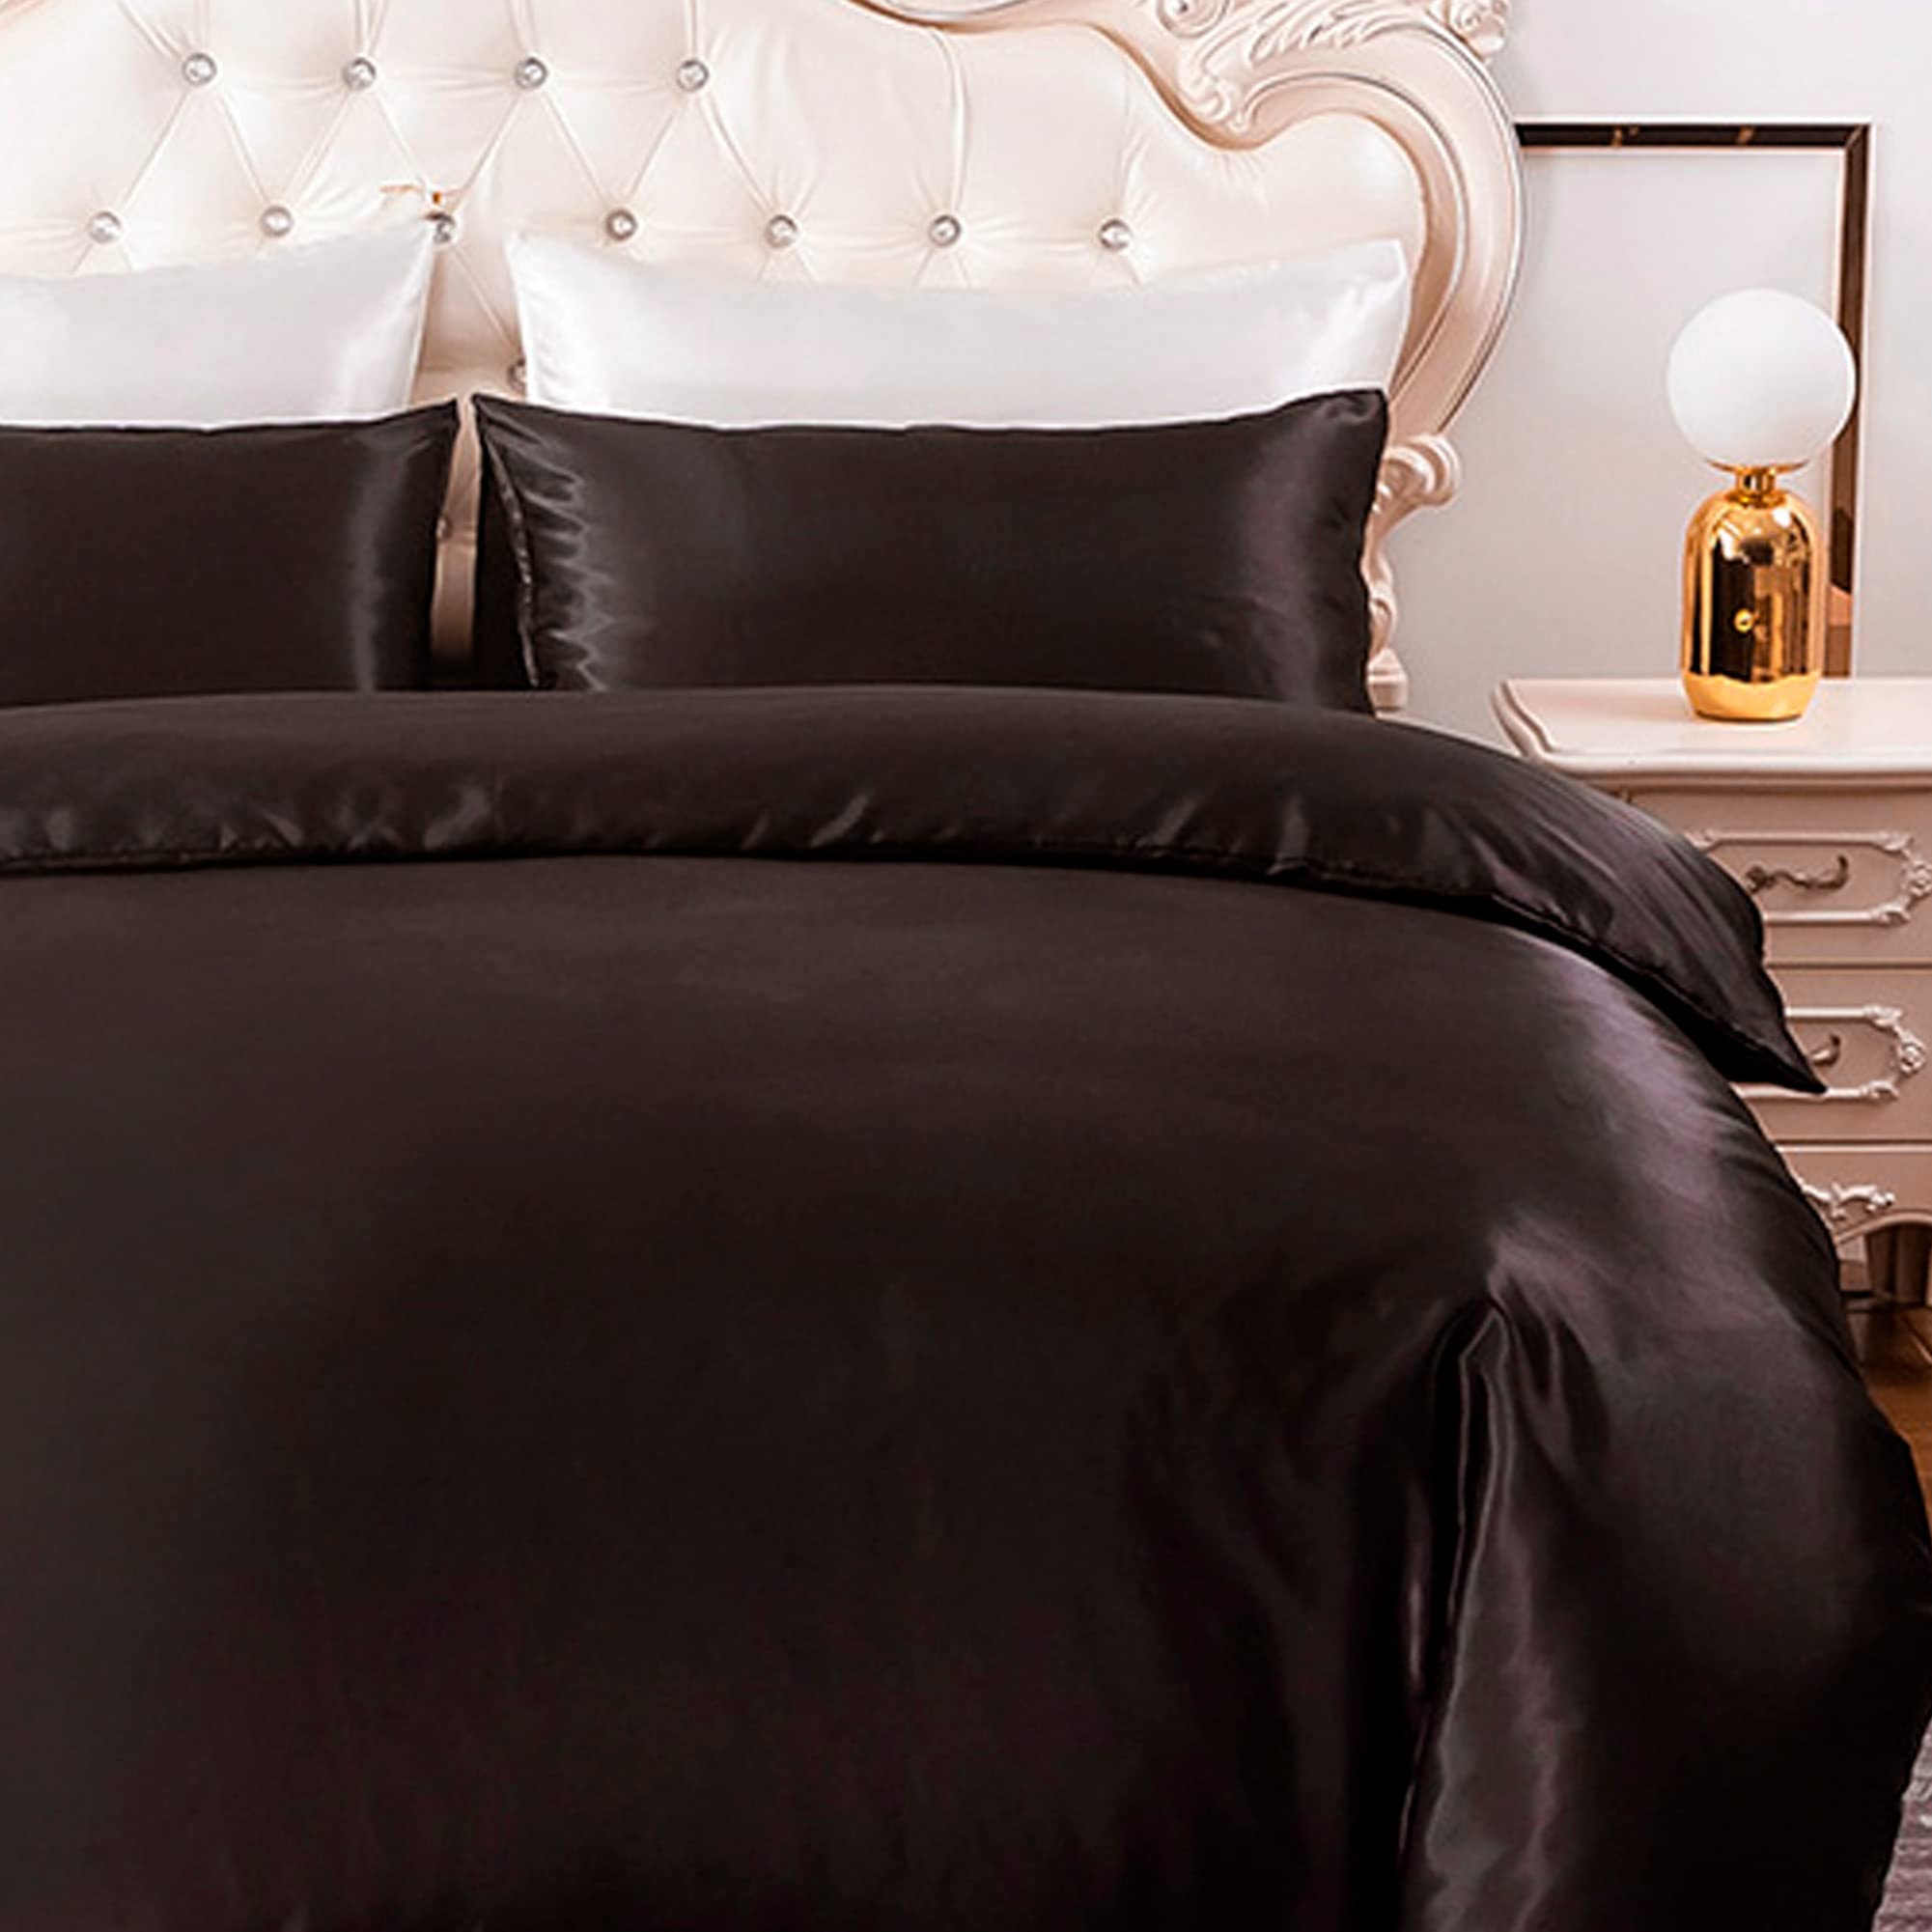 HYSENM Satin Bettwäsche 200 x 200 cm Seide Luxus Bettbezug Set Microfaser Bettbezug+ 2 Kissenhülle 50 x 70 cm einfarbig glatt bequem elegant, Schwarz